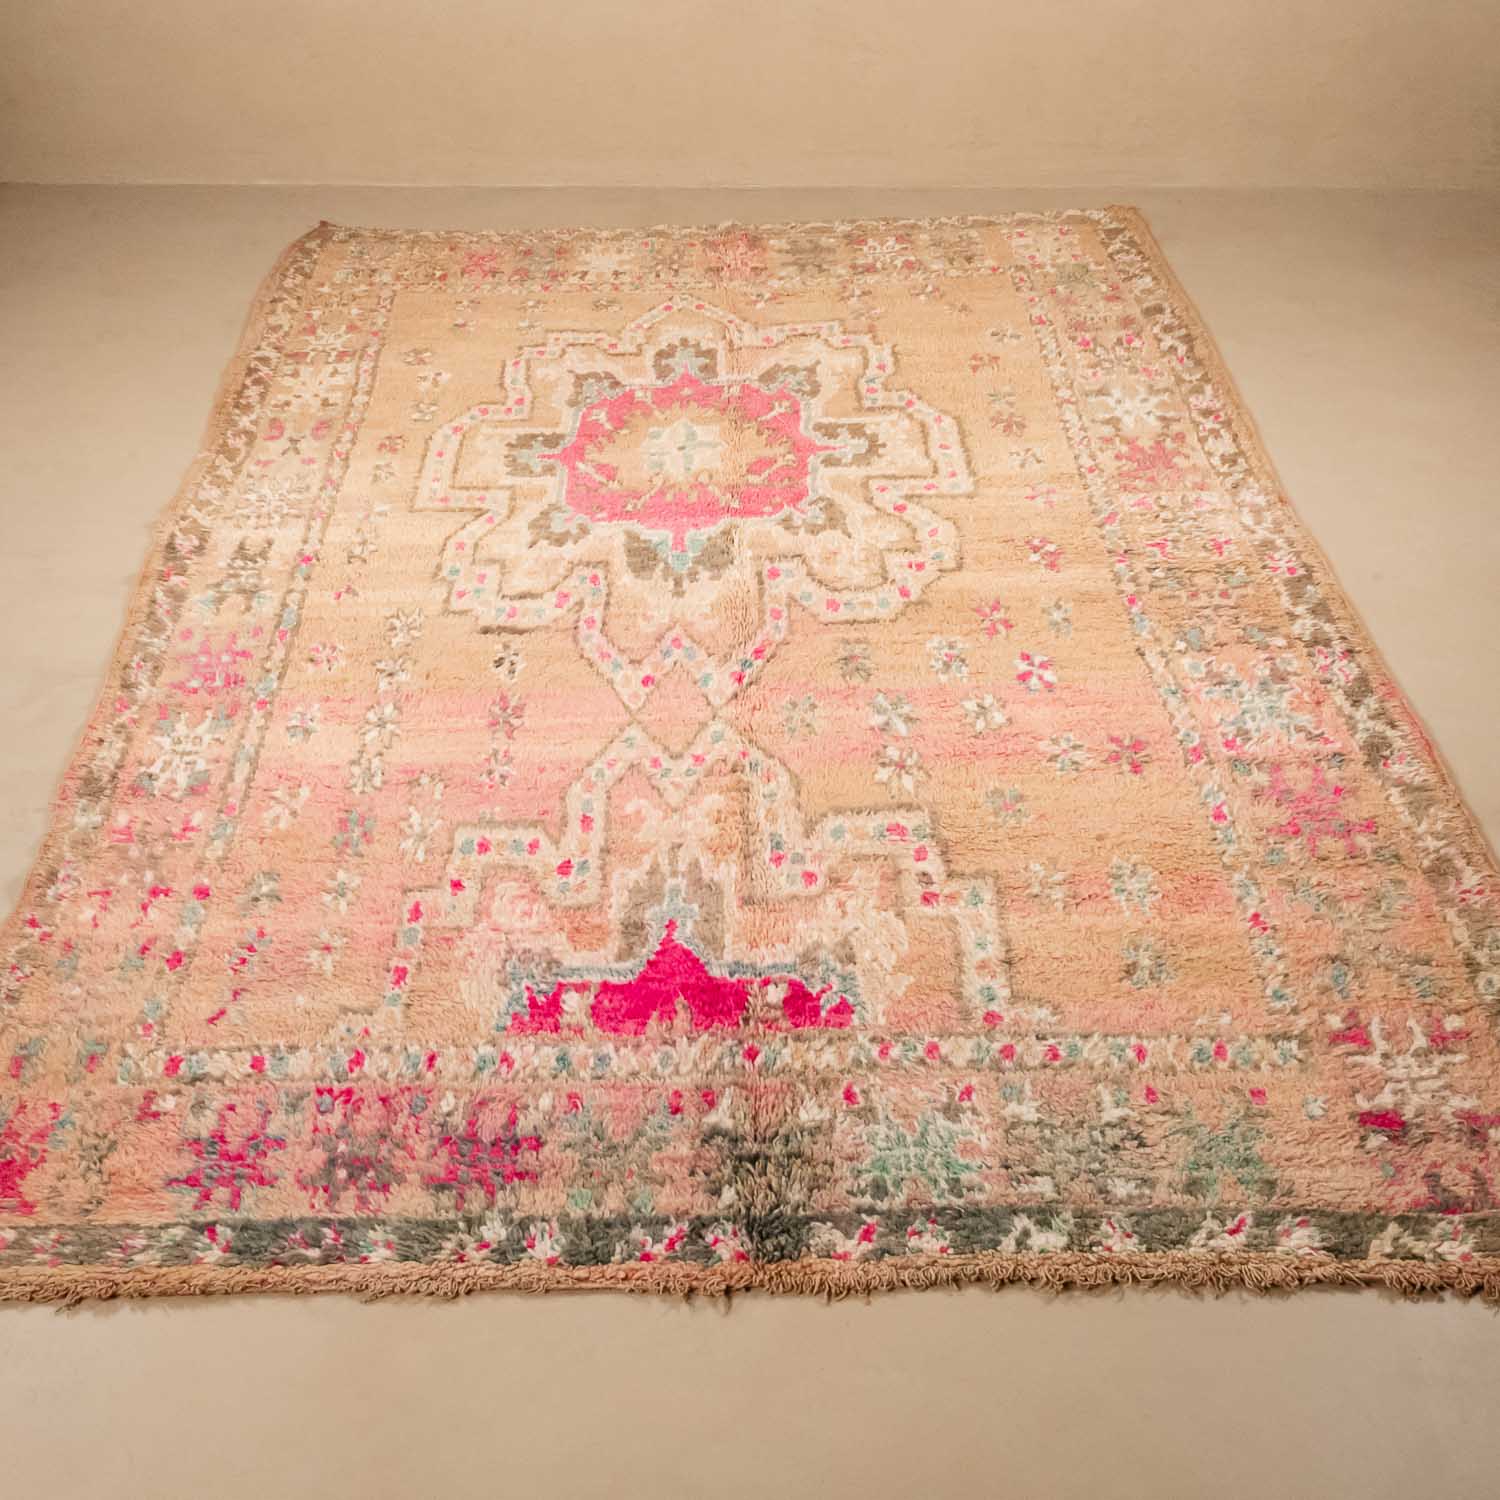 Sifaks - Vintage Moroccan rug